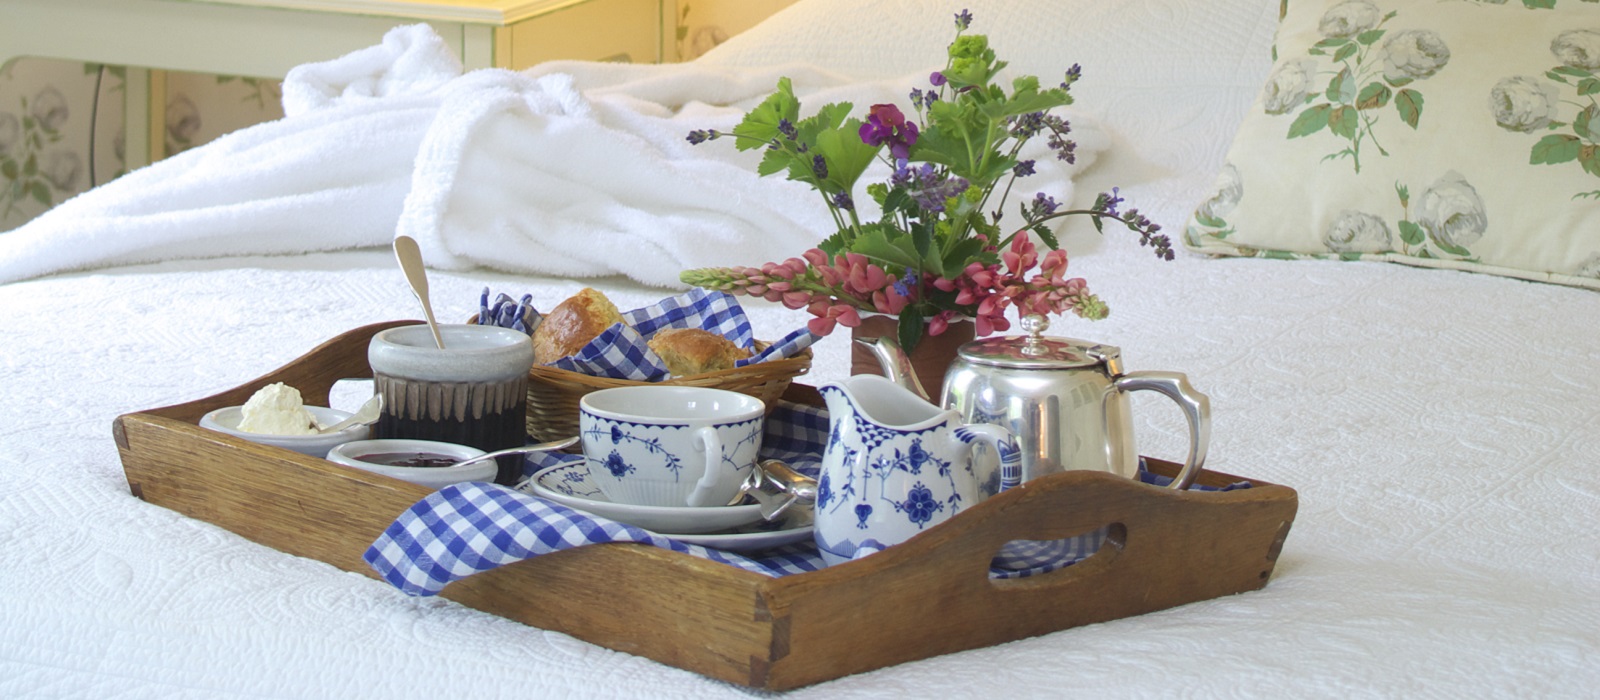 Ballymaloe House Breakfast in Bed